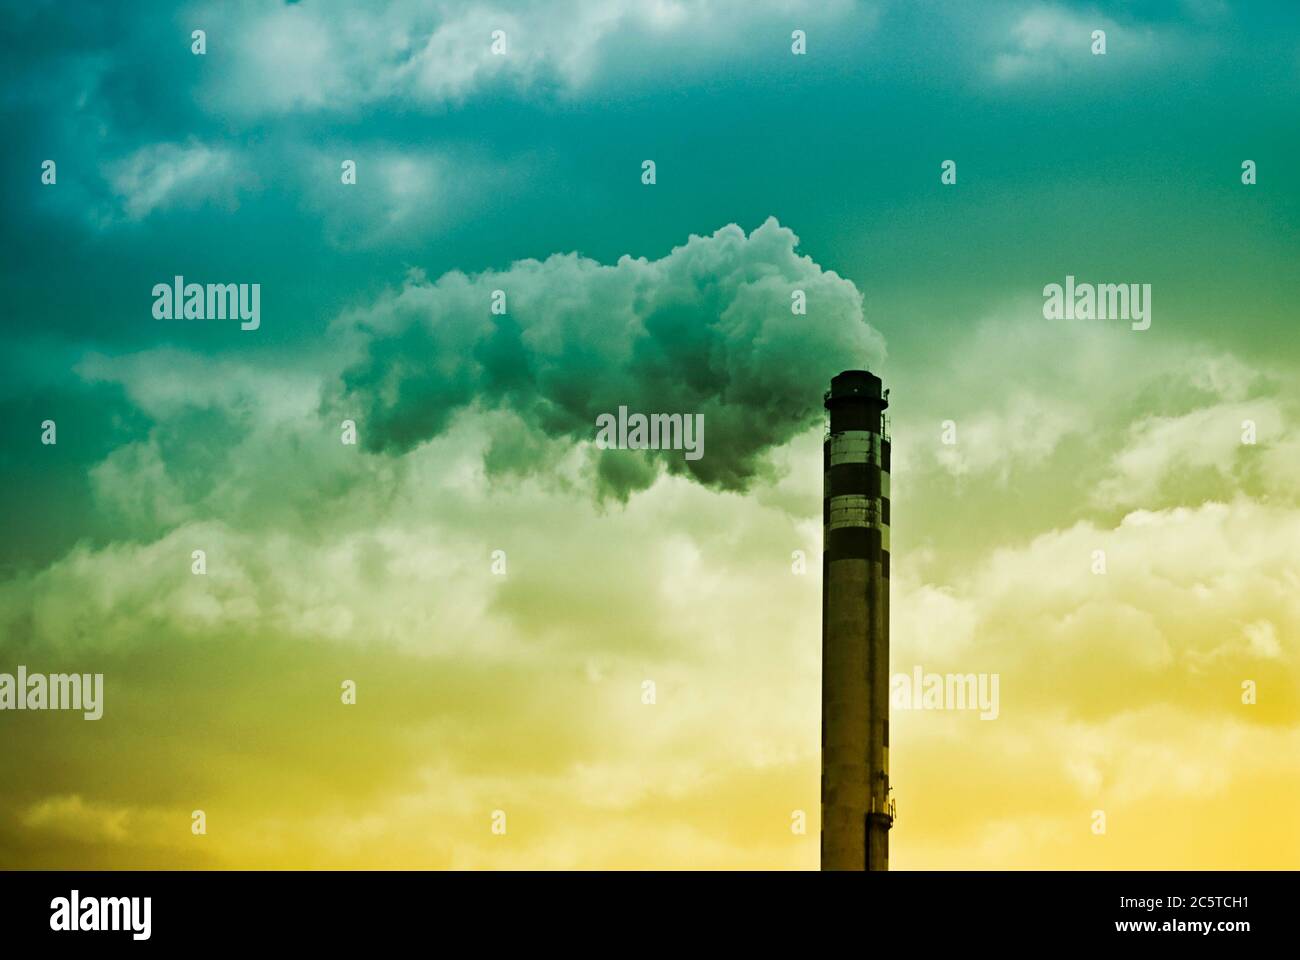 Schornstein mit Rauch aus einer Industrieanlage, Klimawandel durch menschliche Aktivität und globale Erwärmung Konzept induziert Stockfoto